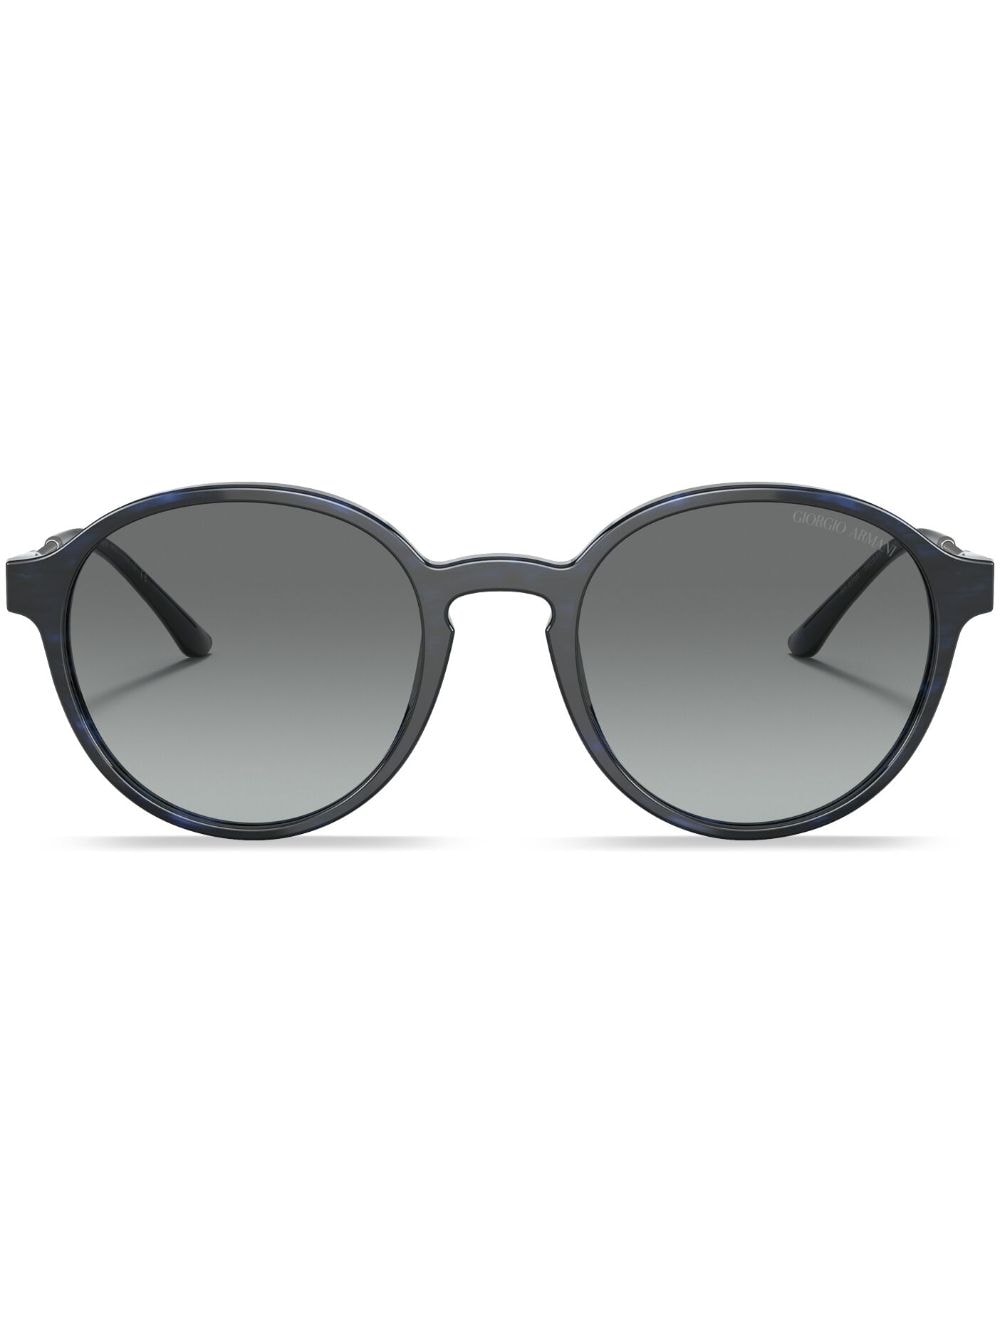 Giorgio Armani Panto Round-frame Sunglasses In Black